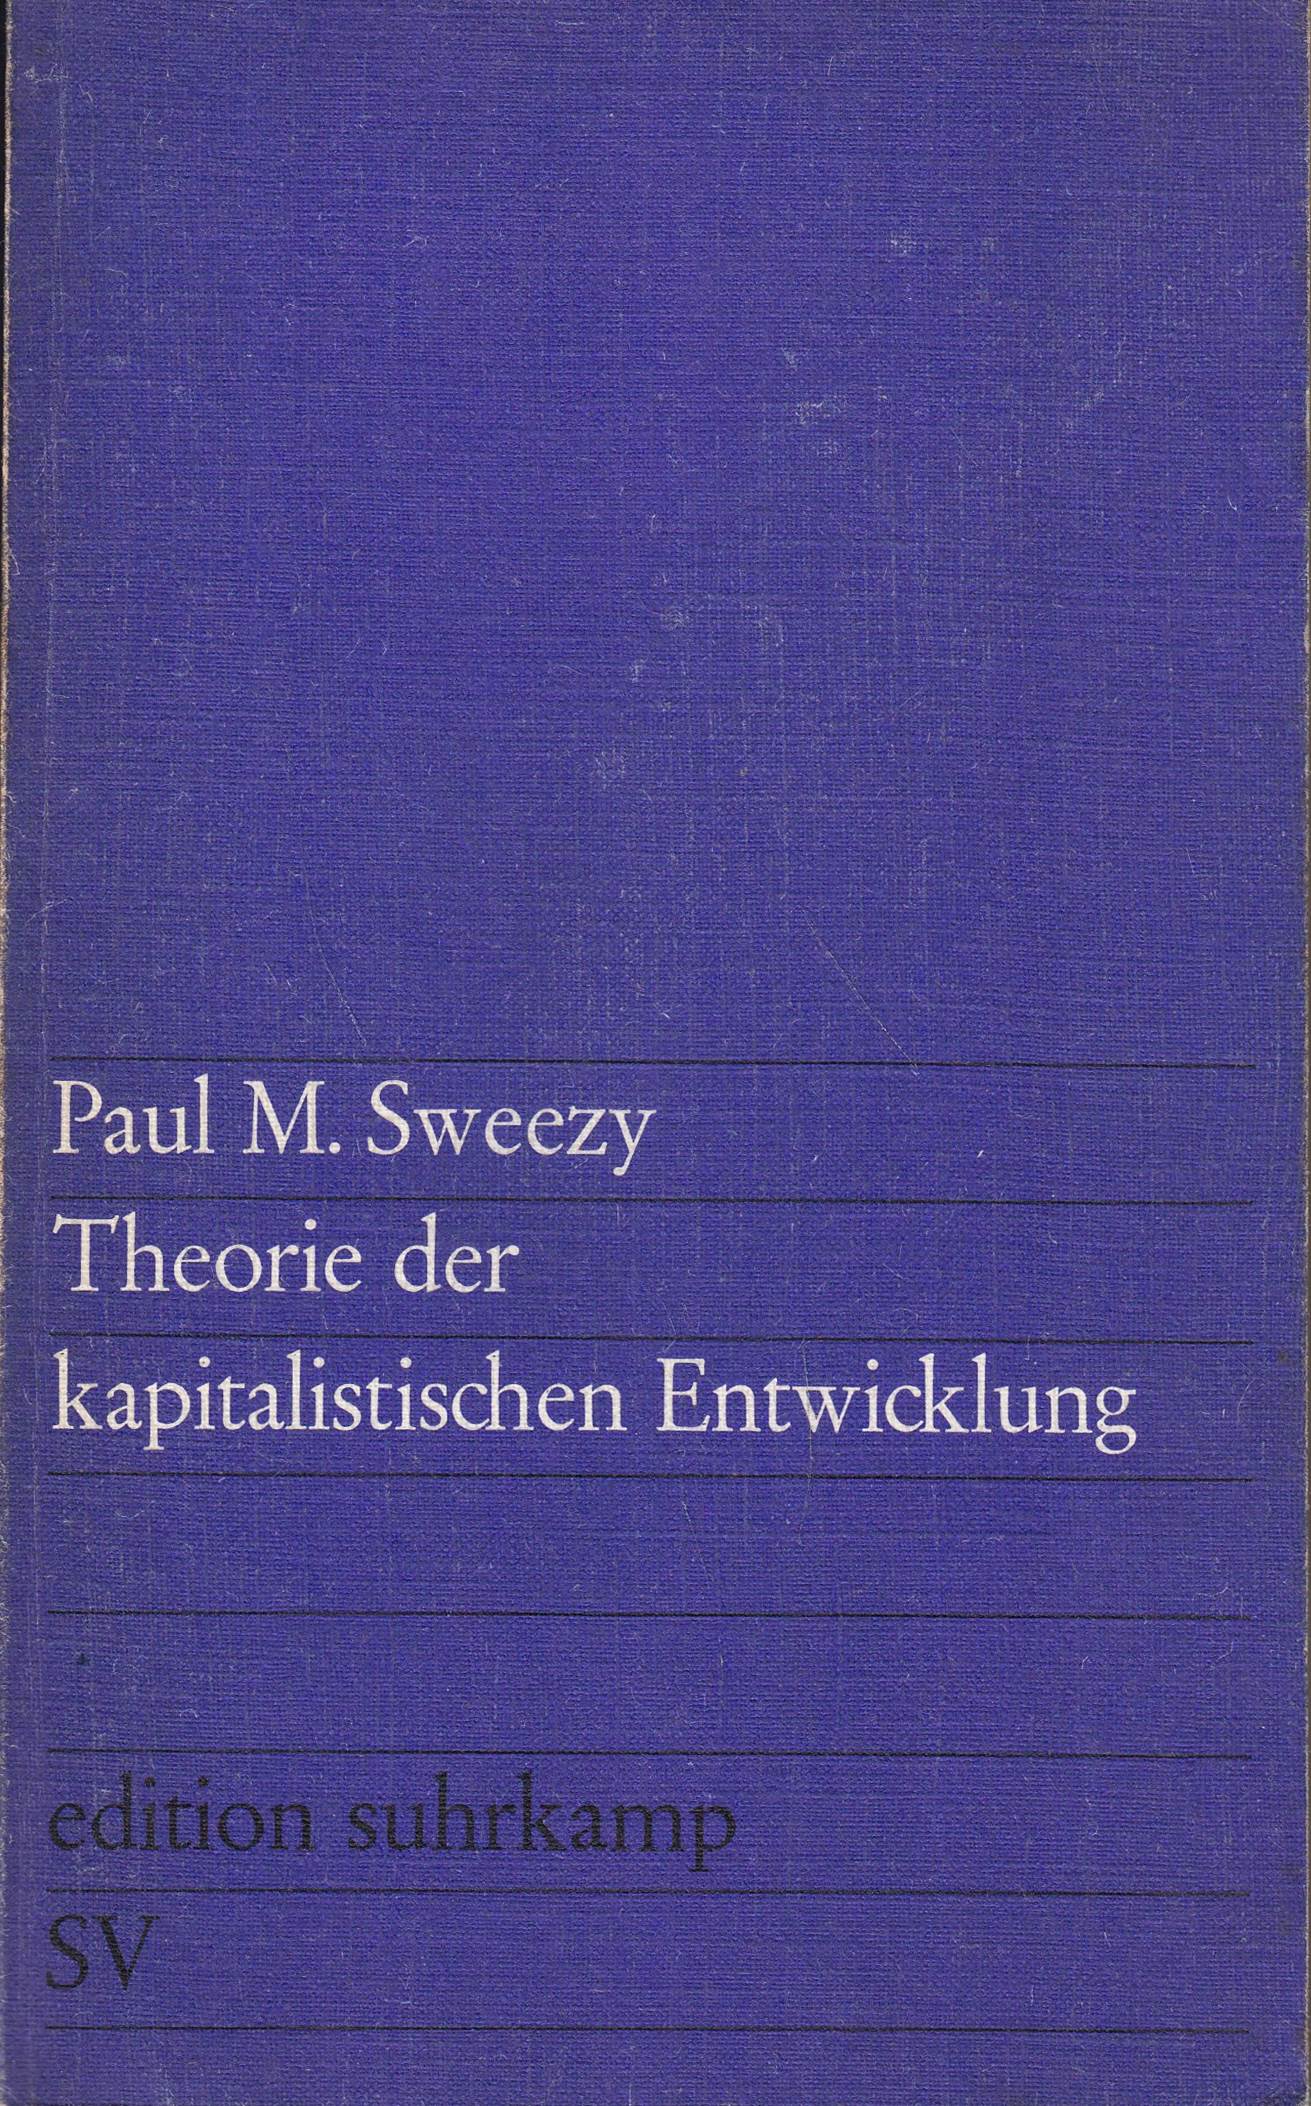 Theorie der kapitalistischen Entwicklung. Eine analytische Studie der Marxschen - Sweezy, Paul M.